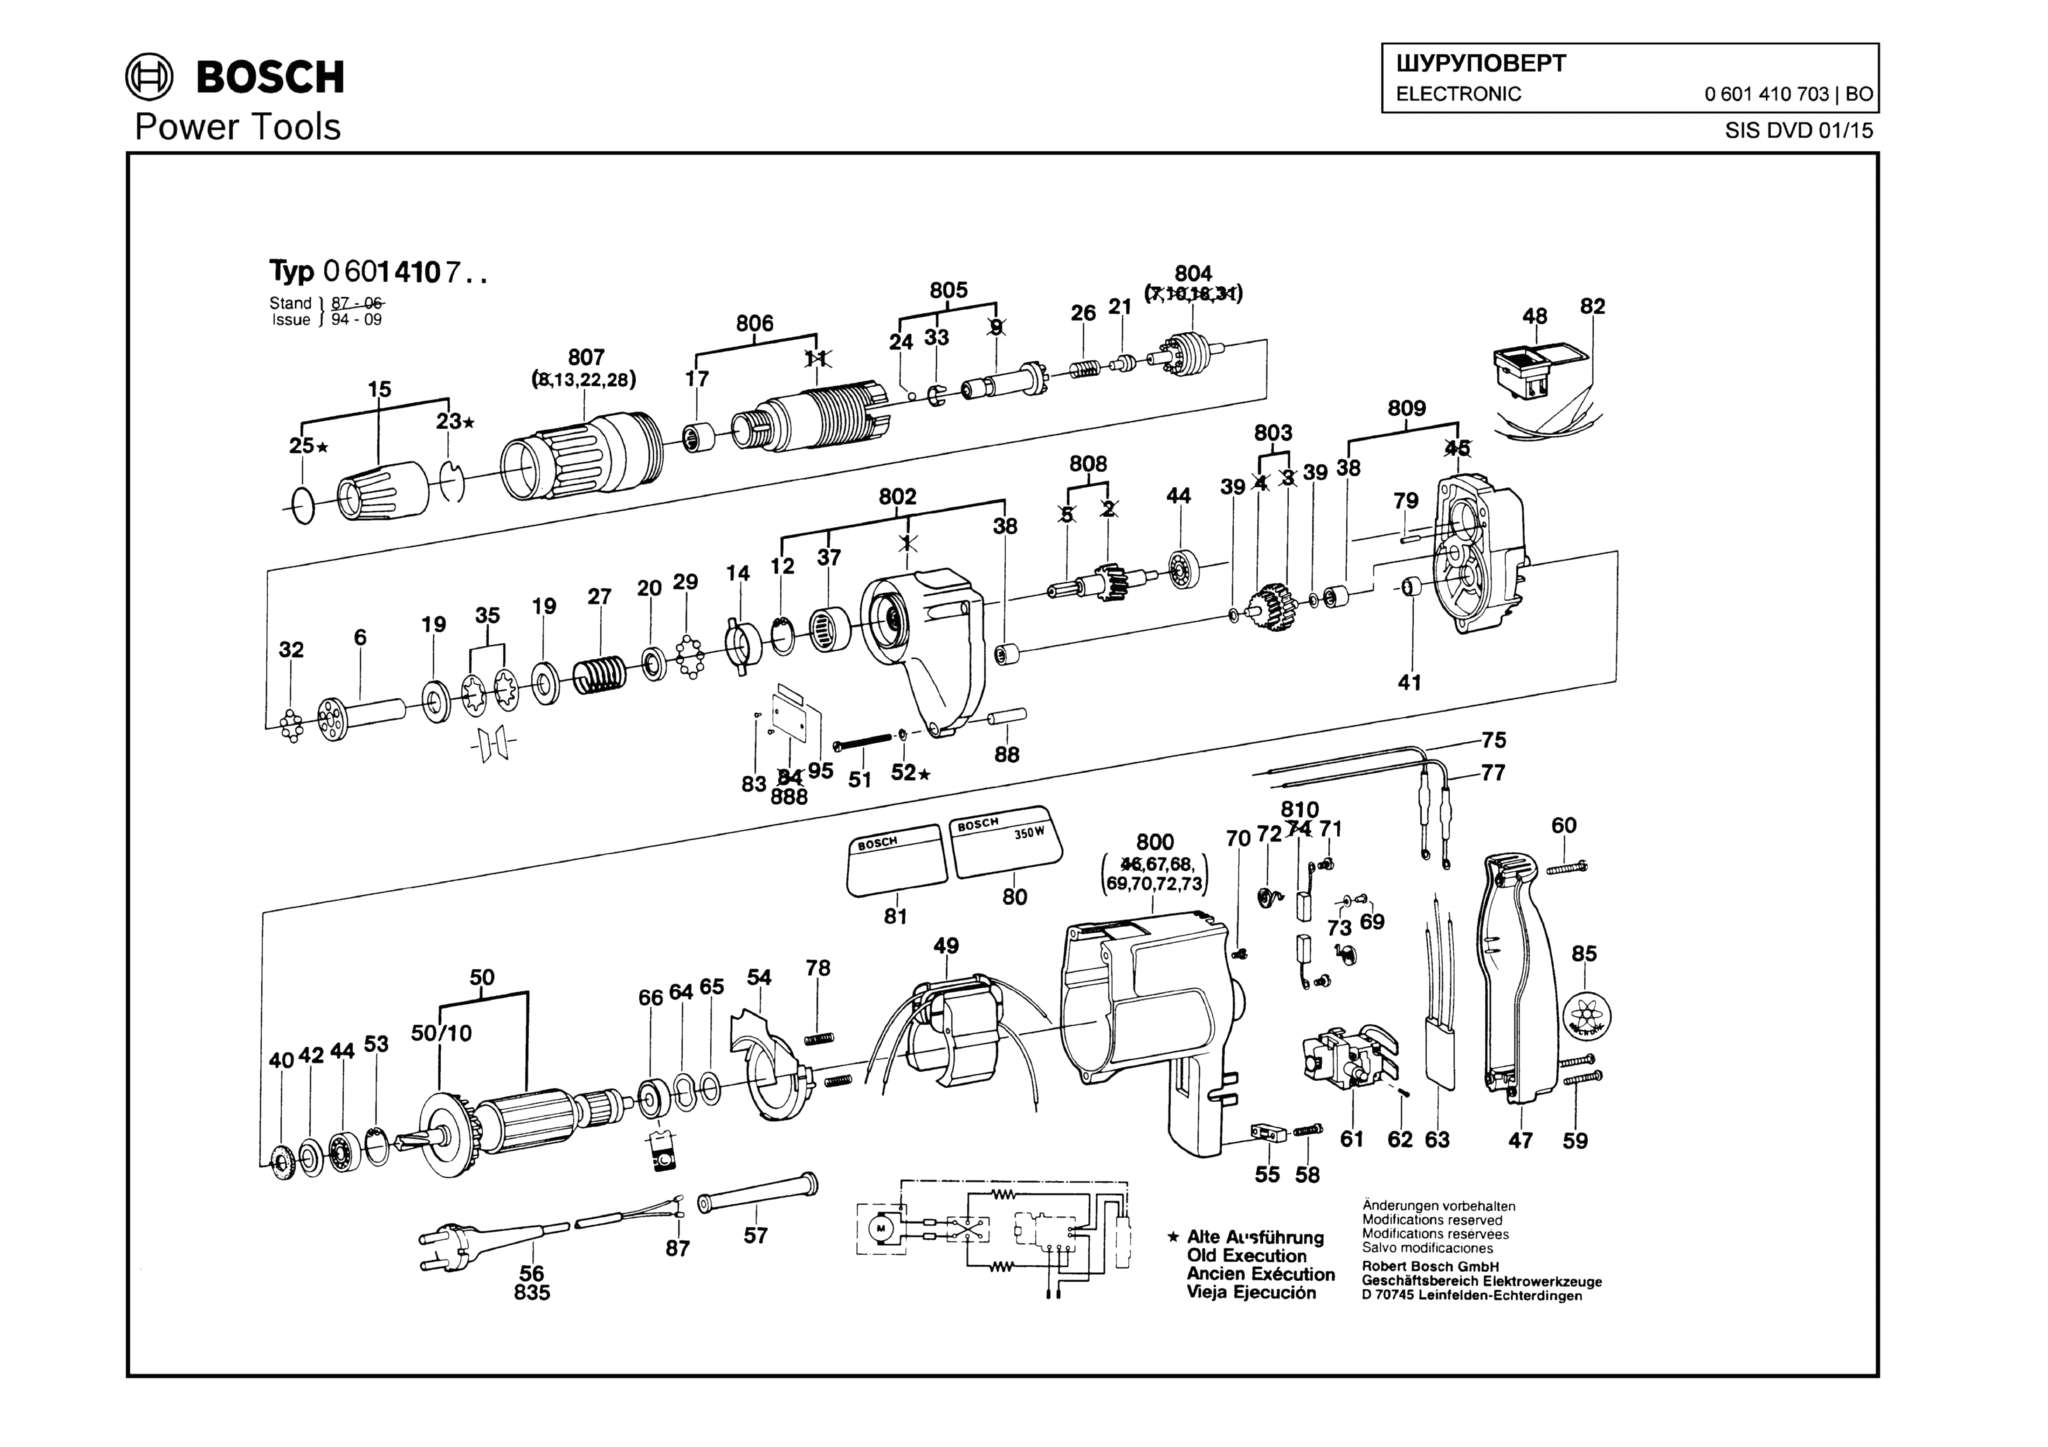 Запчасти, схема и деталировка Bosch ELECTRONIC (ТИП 0601410703)